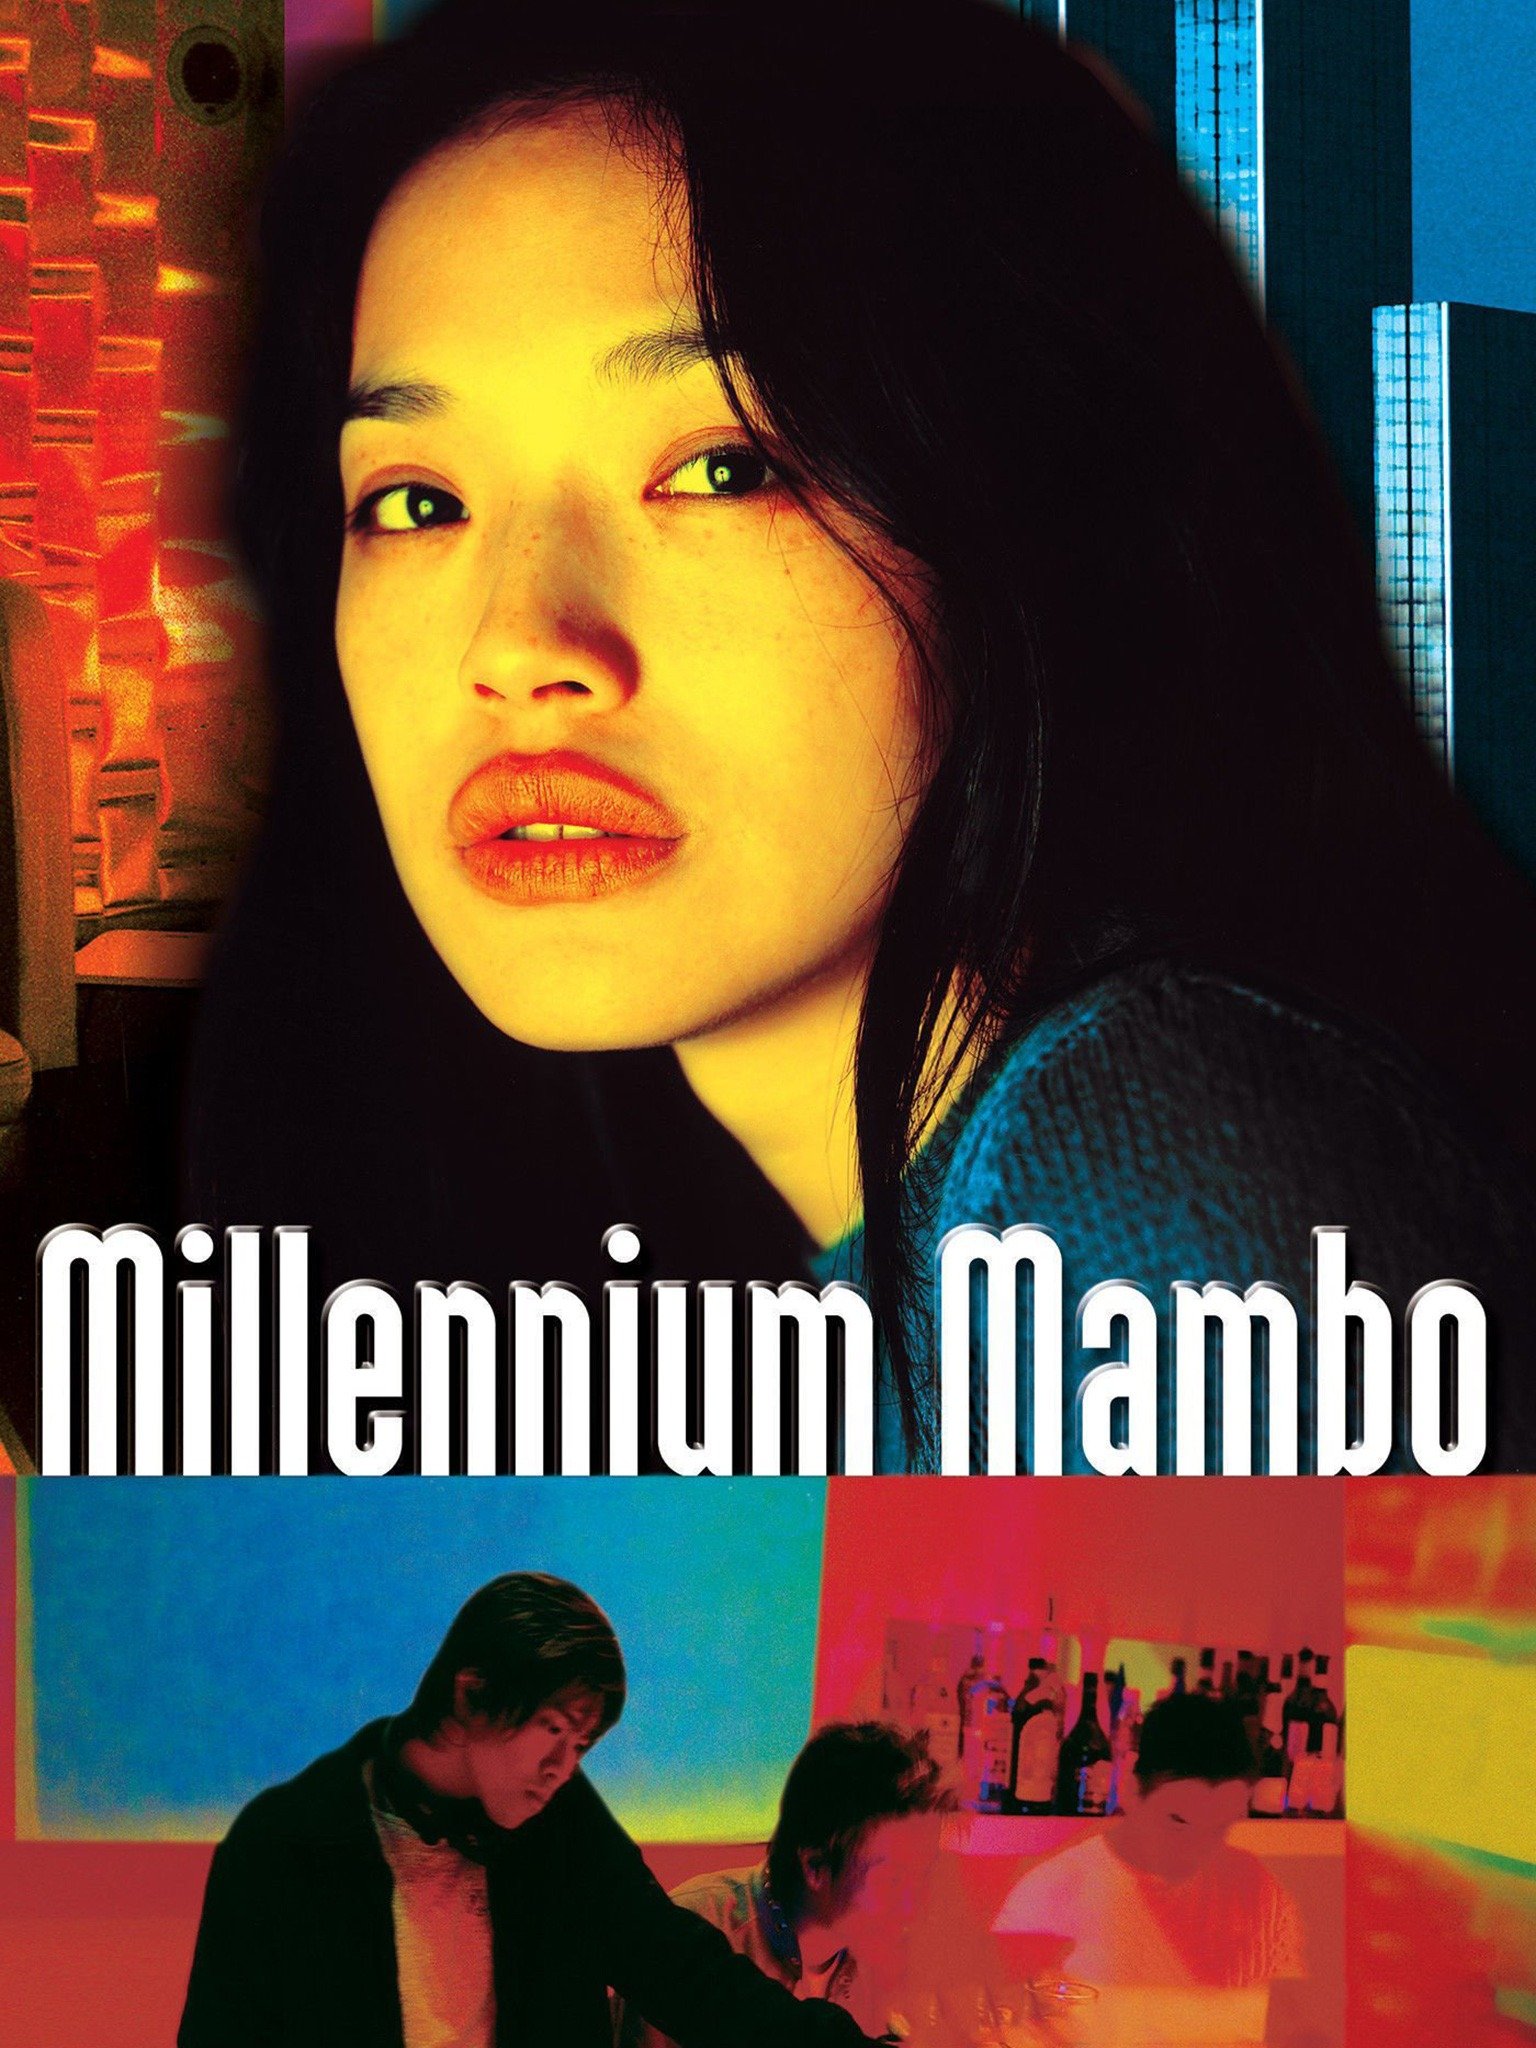 Οι εραστές της χιλιετίας - Millennium Mambo - Qianxi mànbo (2001)